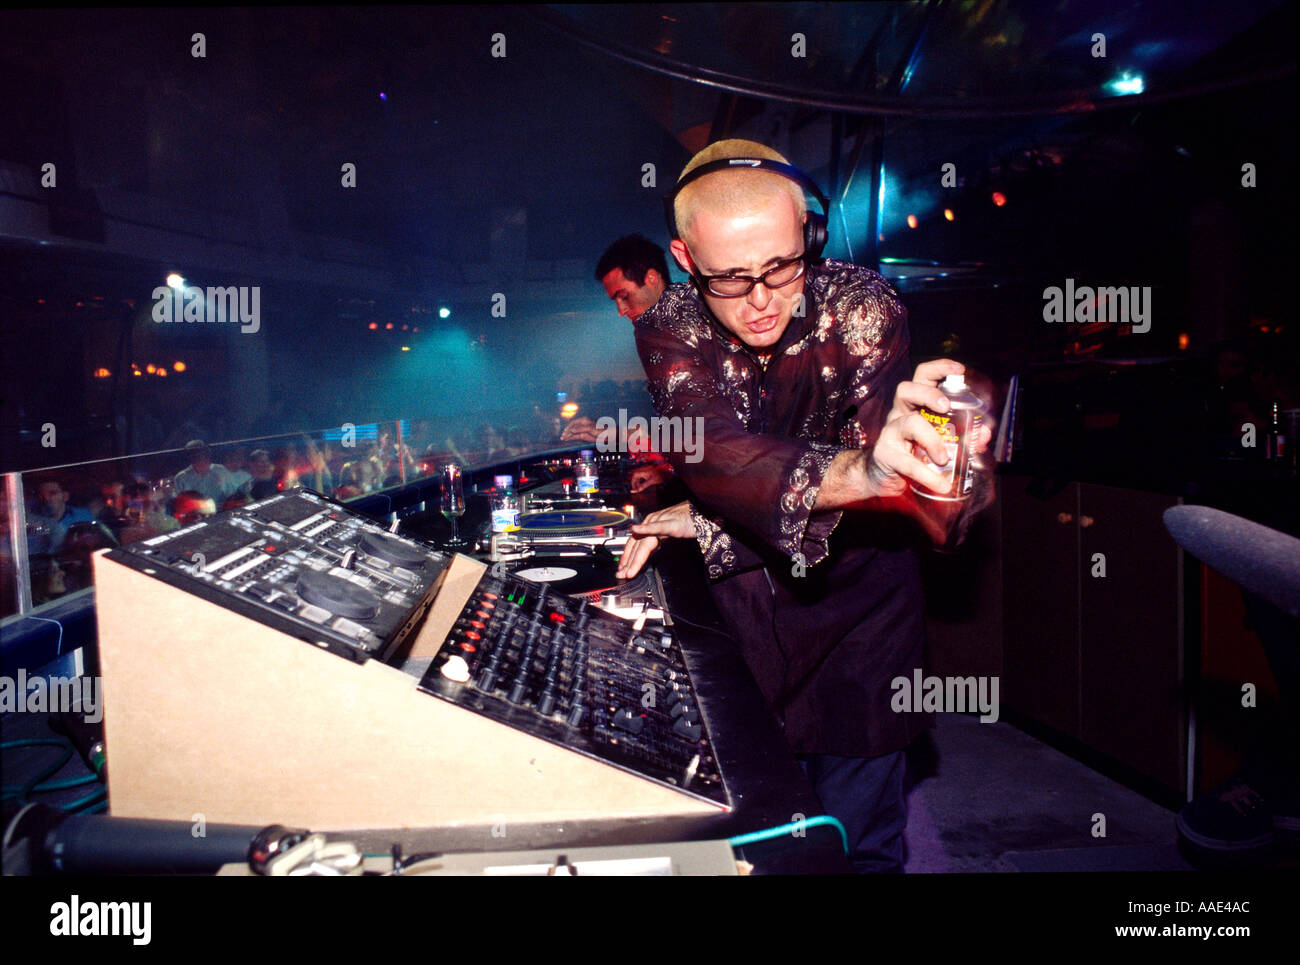 Jules juge DJ à jouer de la musique à l'Eden club Ibiza Espagne Banque D'Images